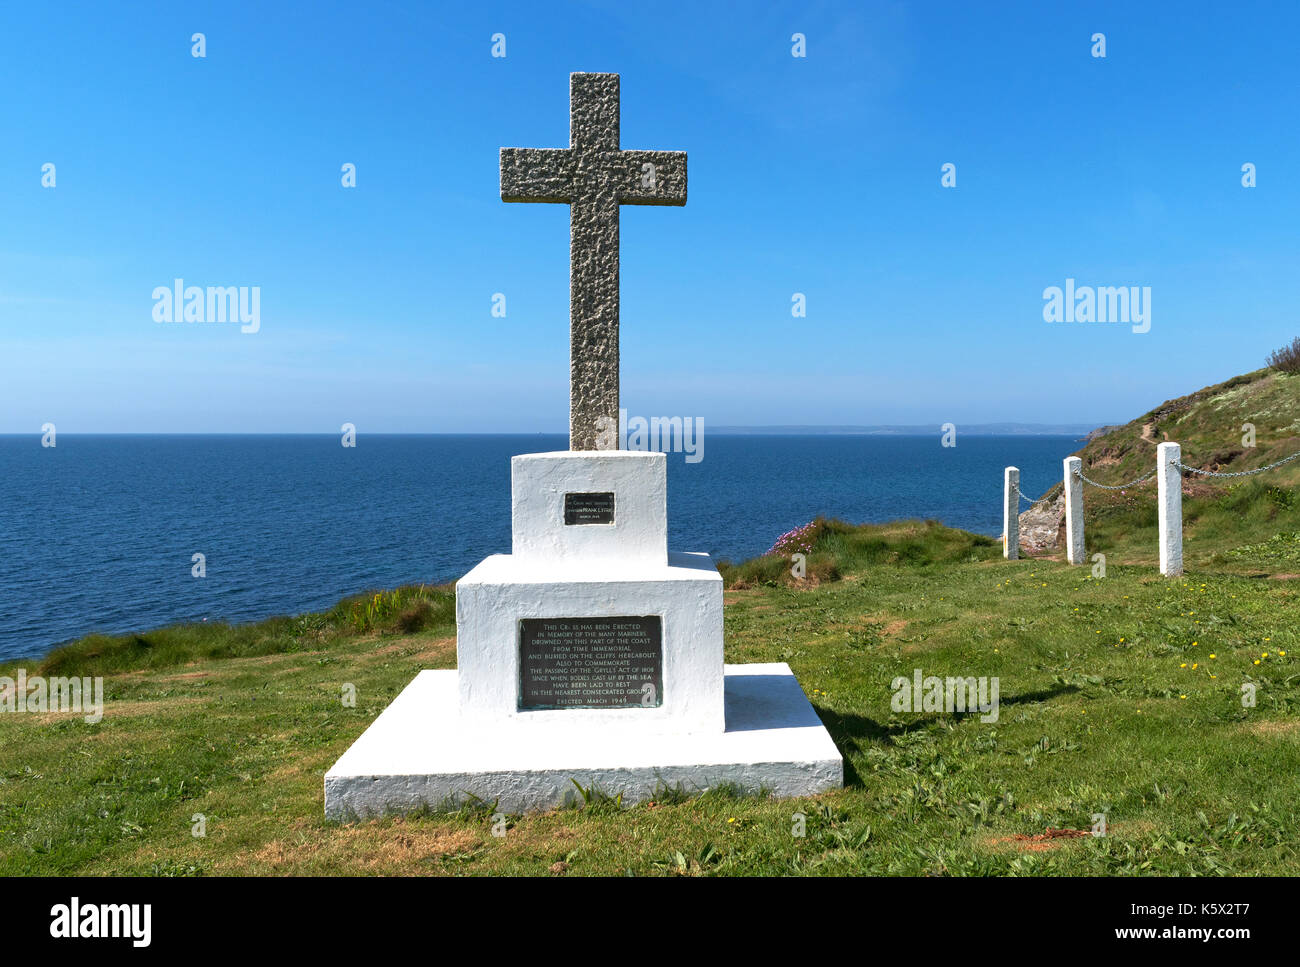 Cruz conmemorativa en porthleven desconocido en memoria de los marineros ahogados en el mar, también para conmemorar el " grylls actuar " de 1808. Foto de stock